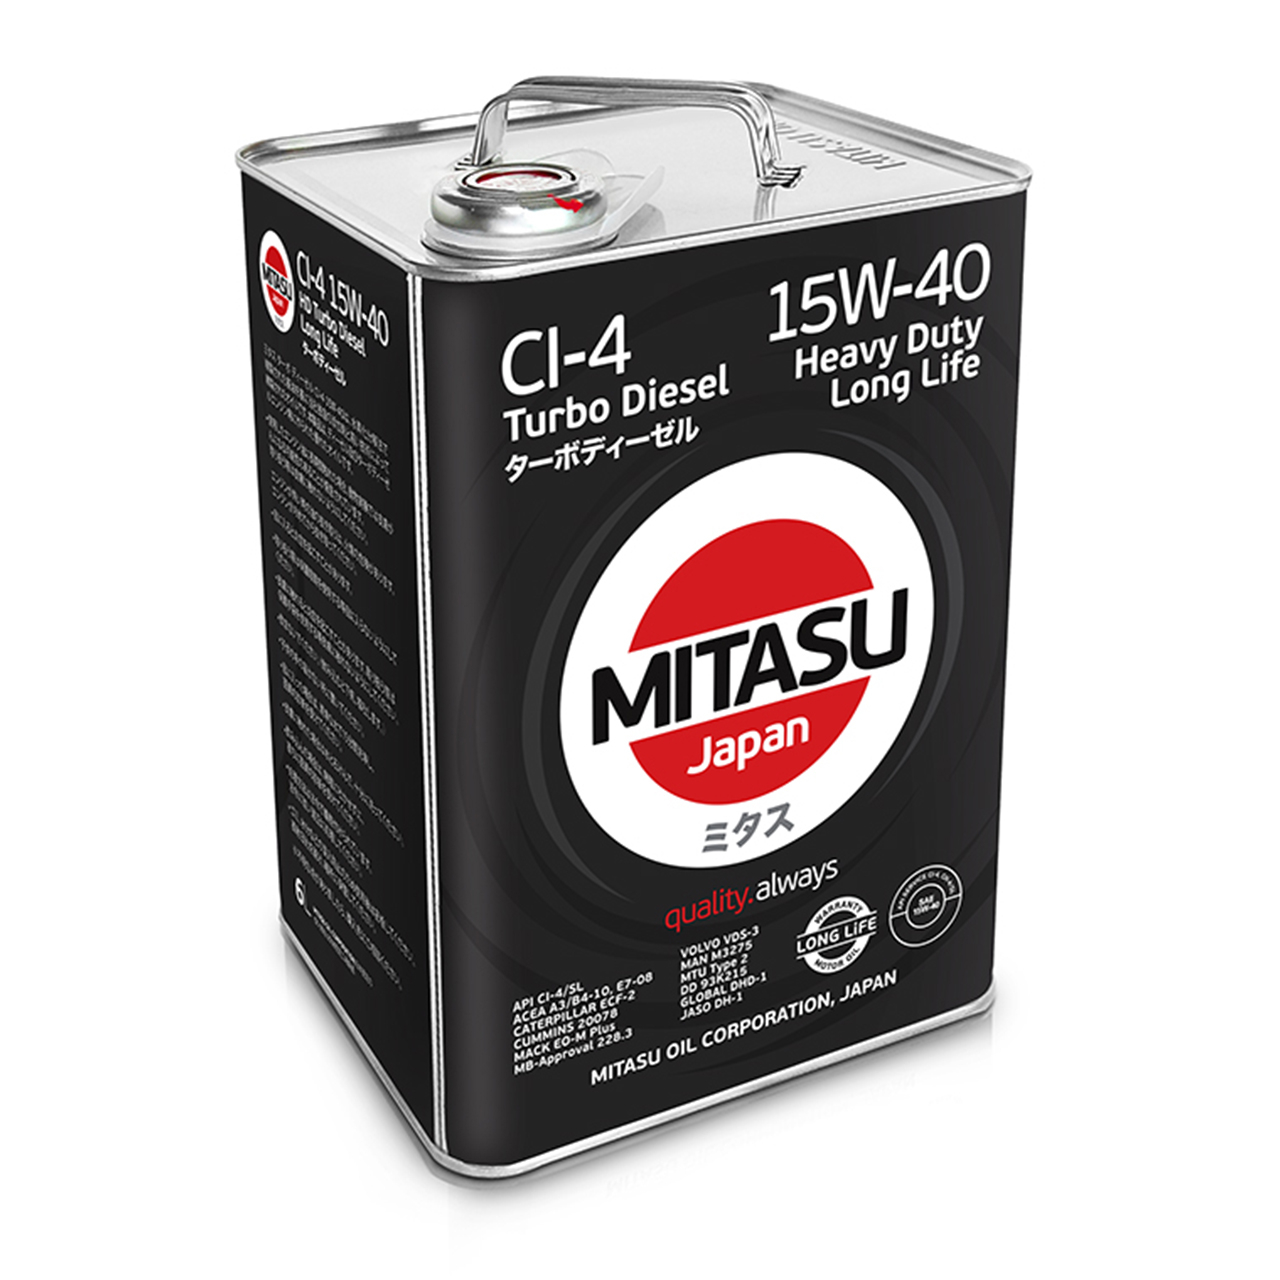 Купить запчасть MITASU - MJ2316 Масло моторное MITASU CI-4 15w40 6л минеральное для дизельных двигателей MJ231 (1/4) Япония